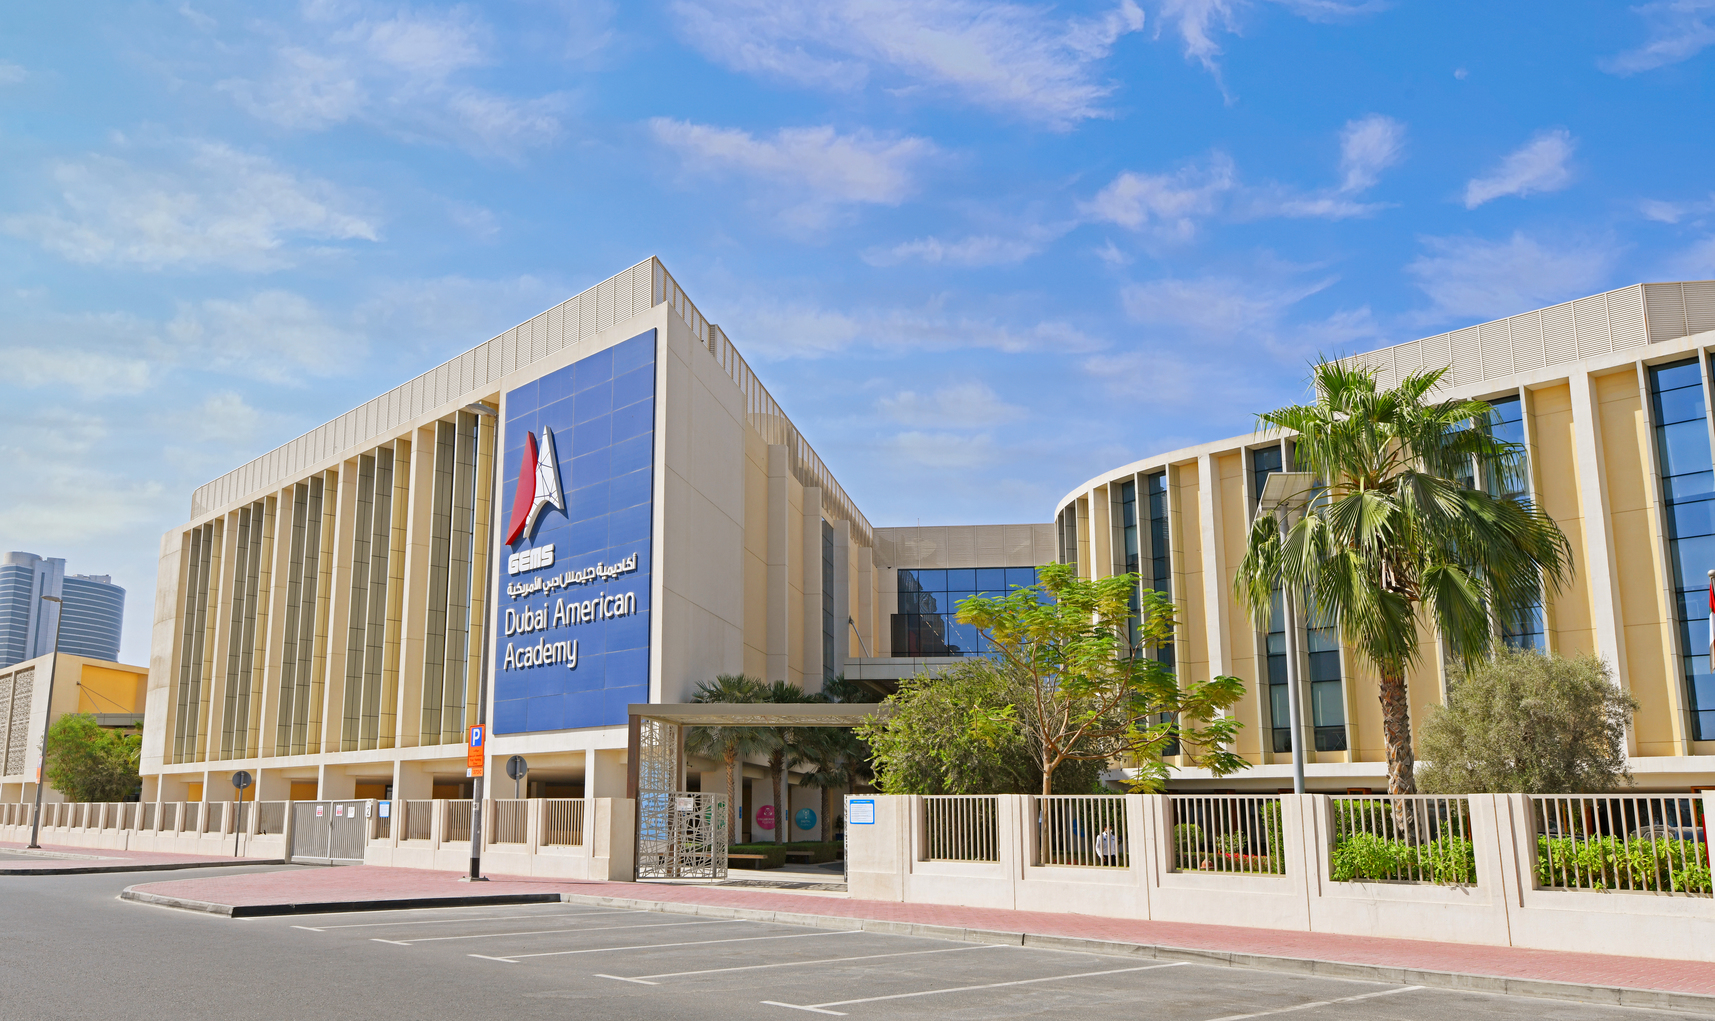 Dubai American Academy Education Middle East